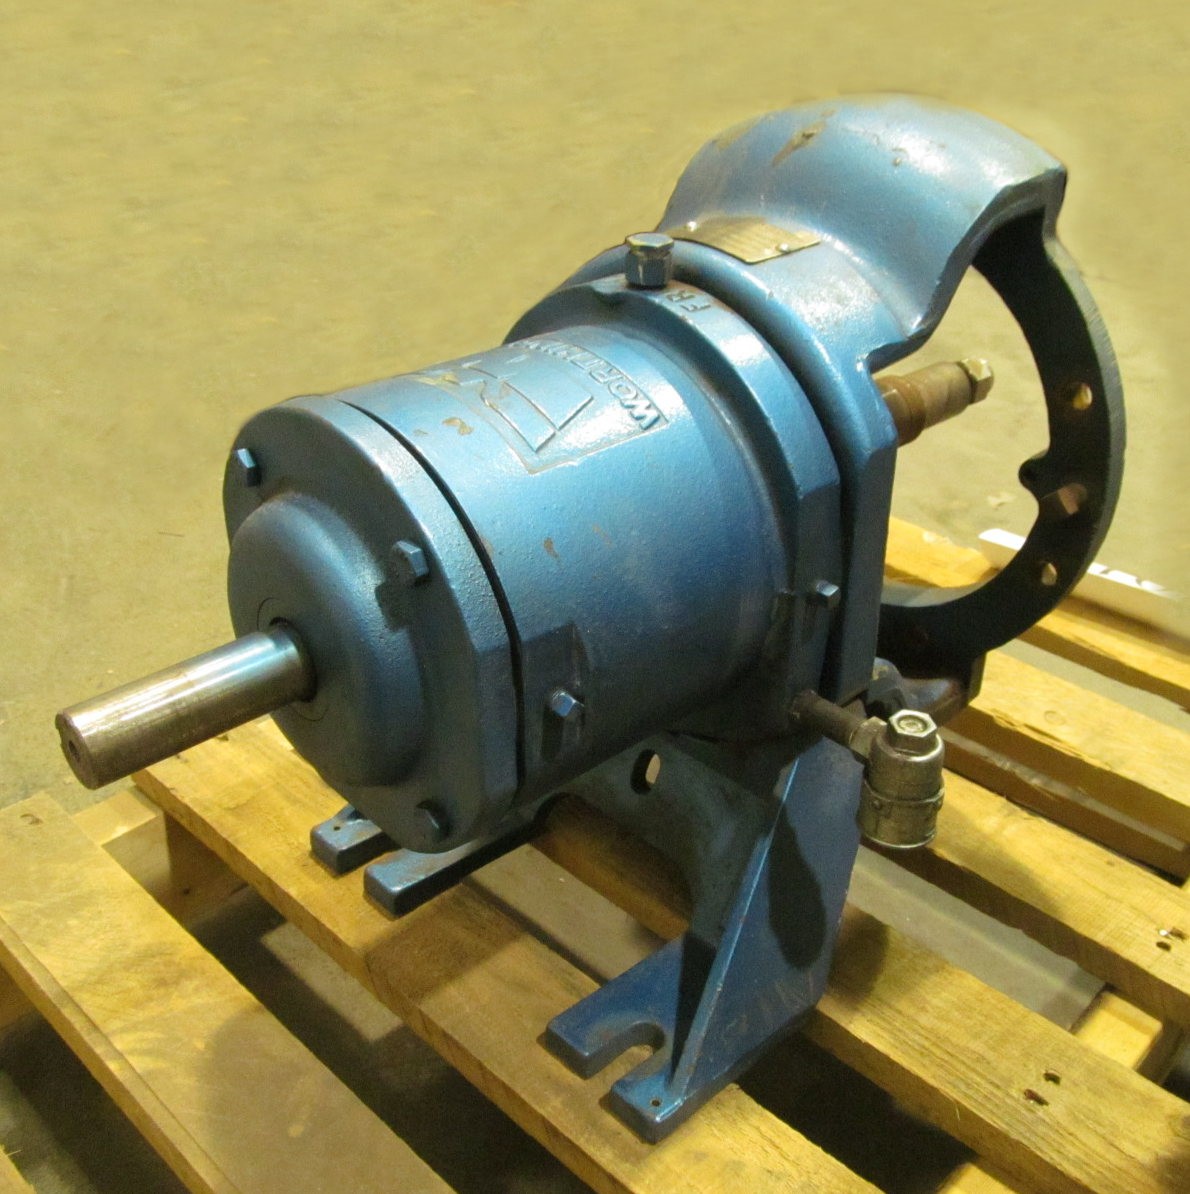 Worthington D-Line pump, model D-1011 4x3x8